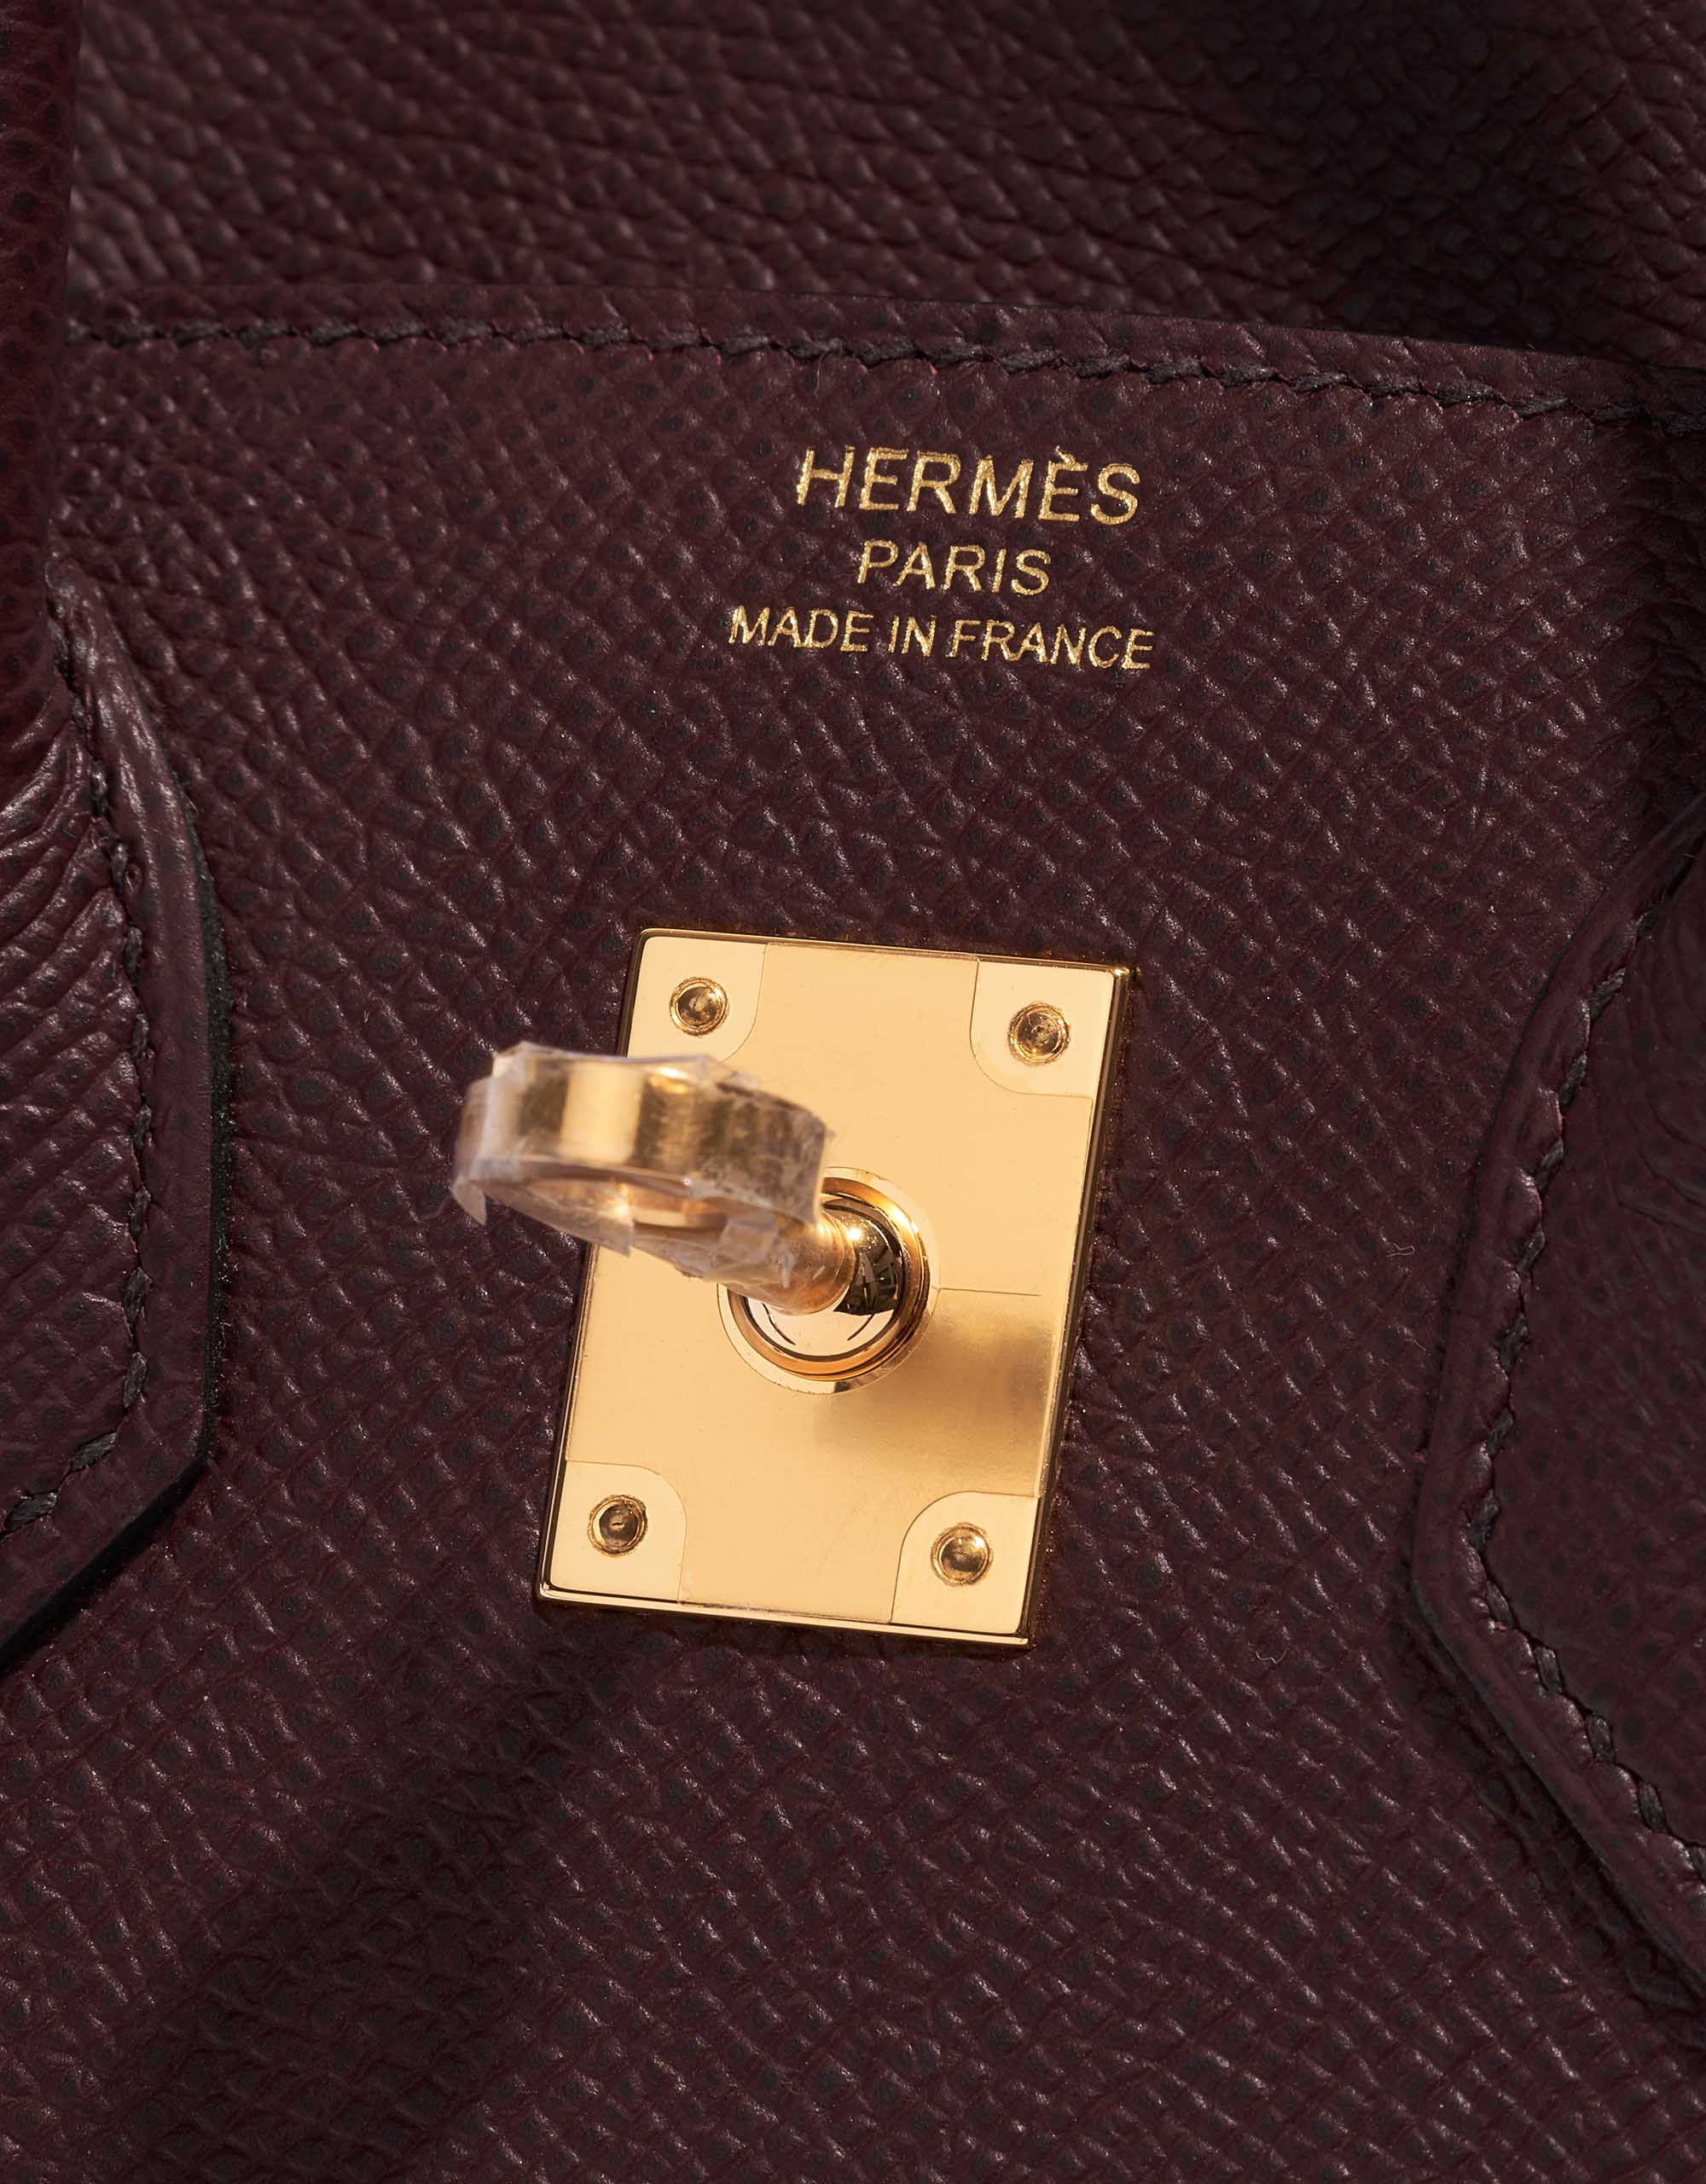 Hermes Birkin bag 25 Rouge sellier Togo leather Gold hardware